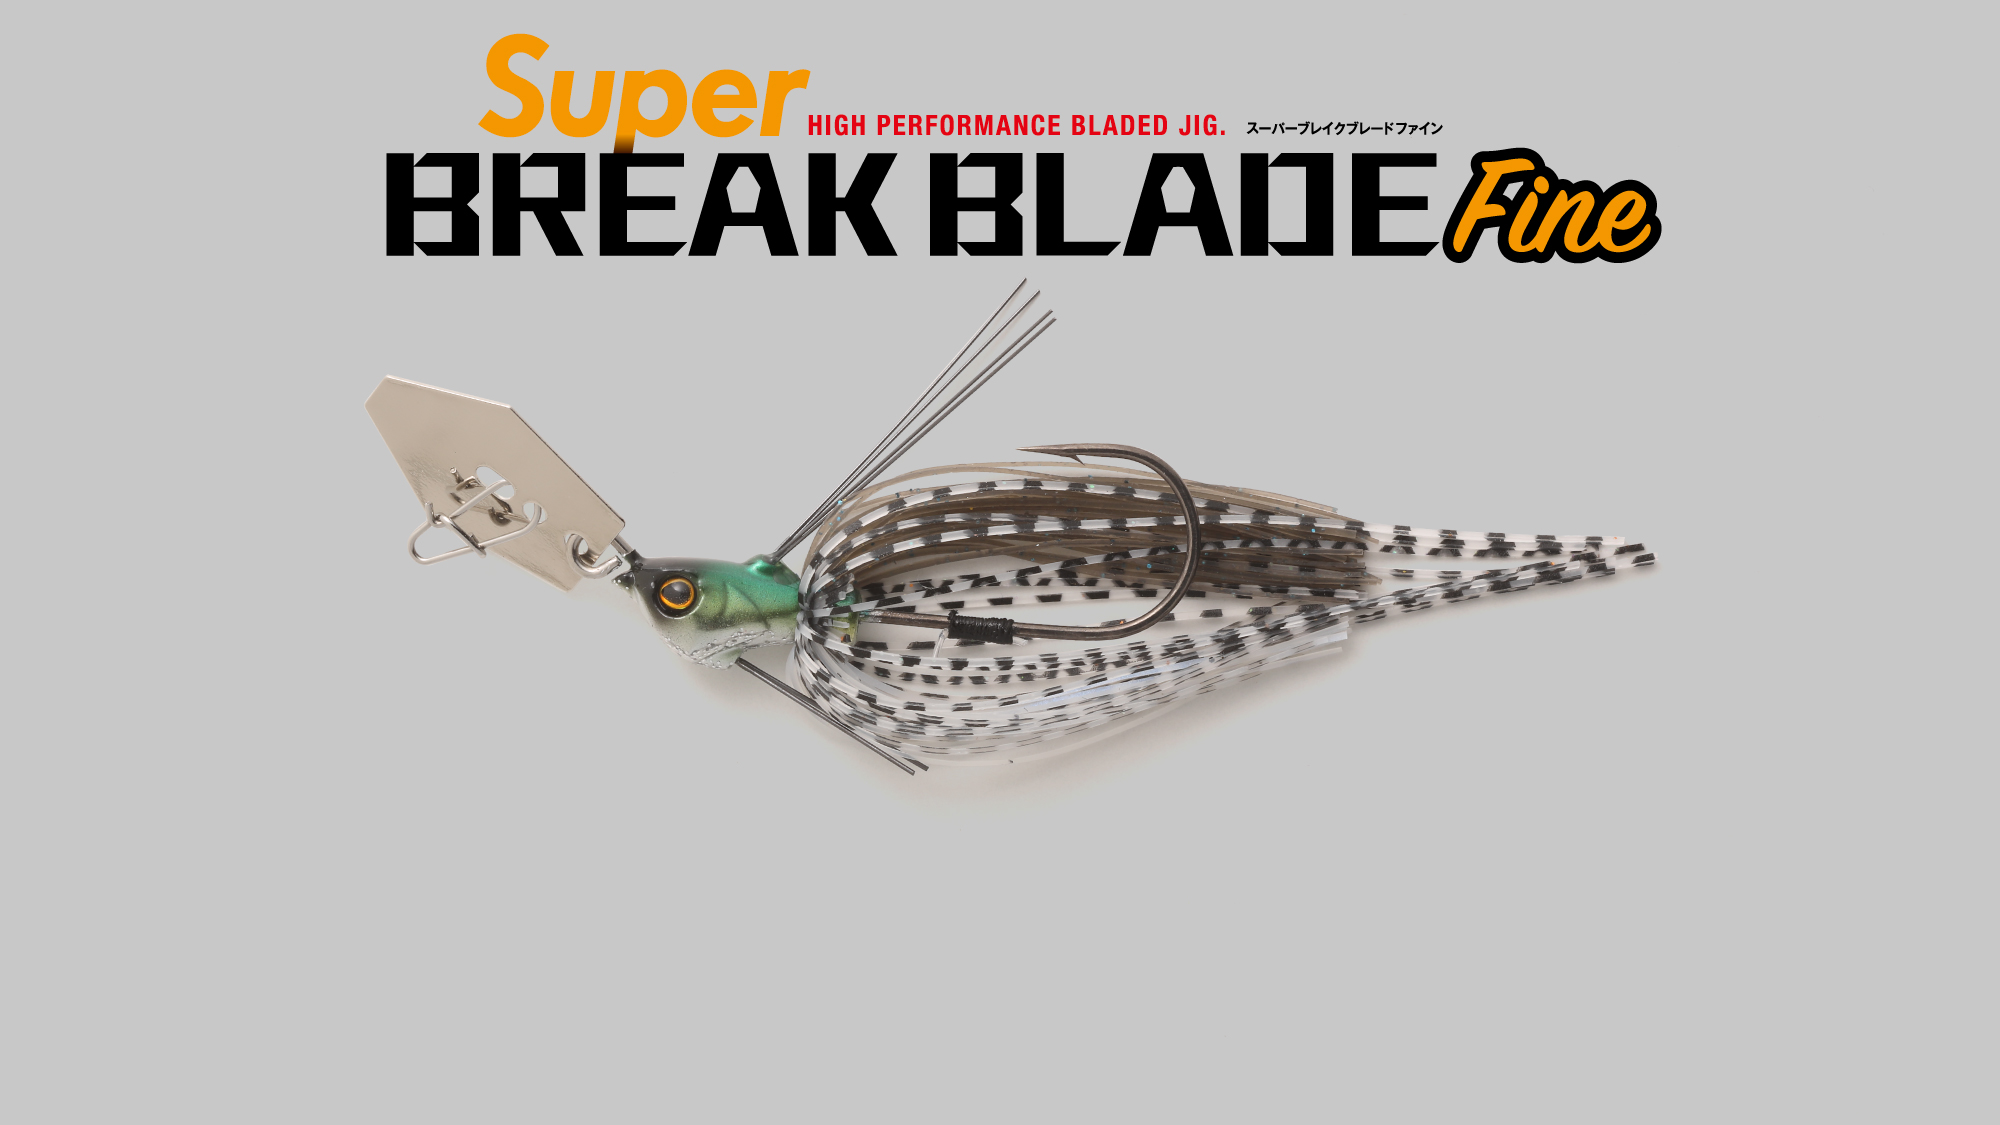 スーパーブレイクブレードファイン Super BREAK BLADE Fine / スーパーブレイクブレードファイン